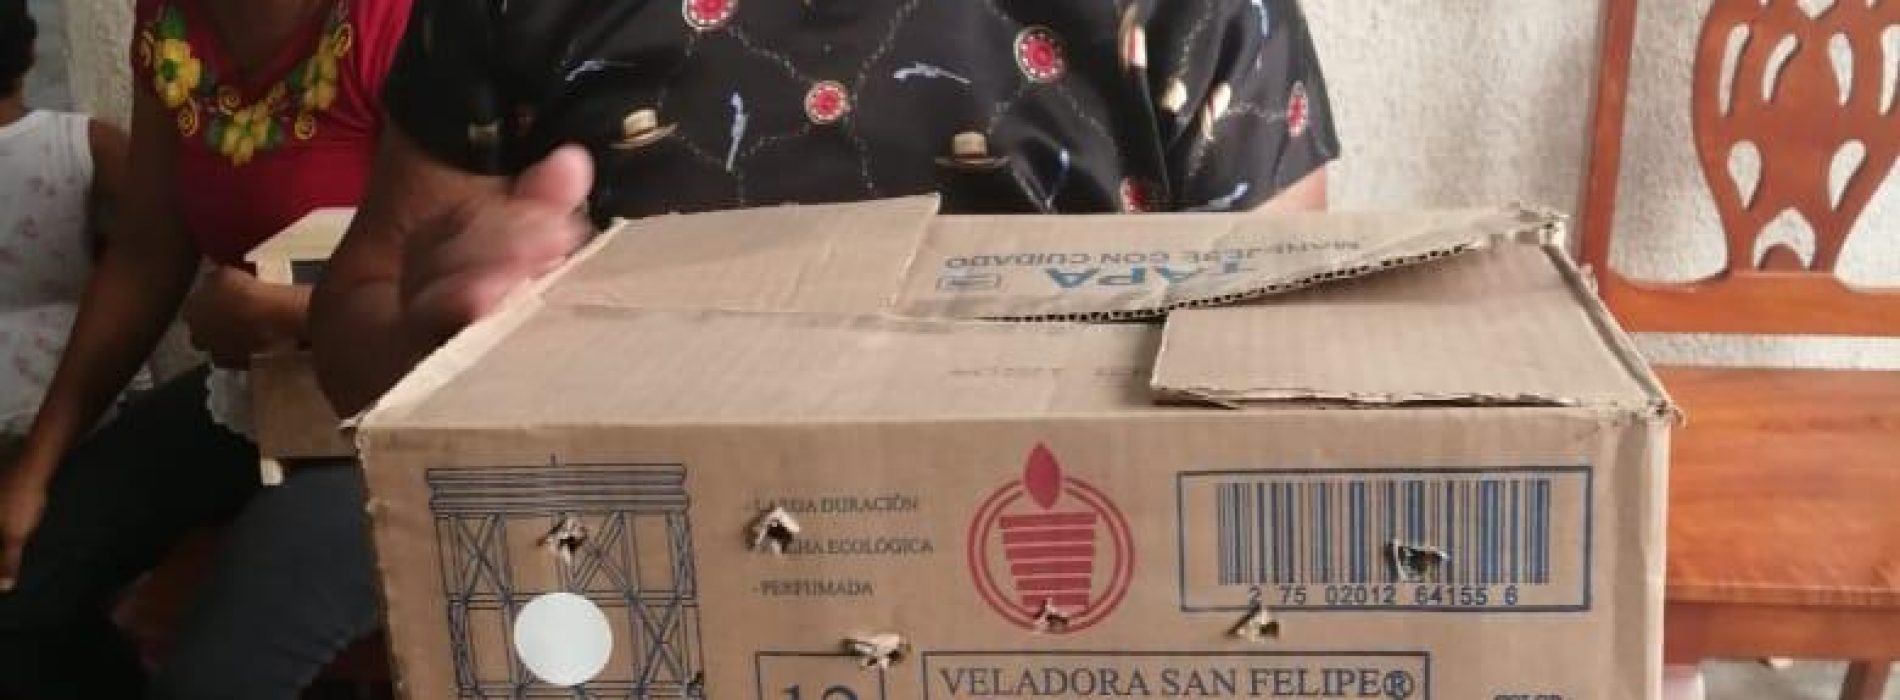 Continúa Aurora López Acevedo con donación de despensas y juguetes, ahora en Juchitán